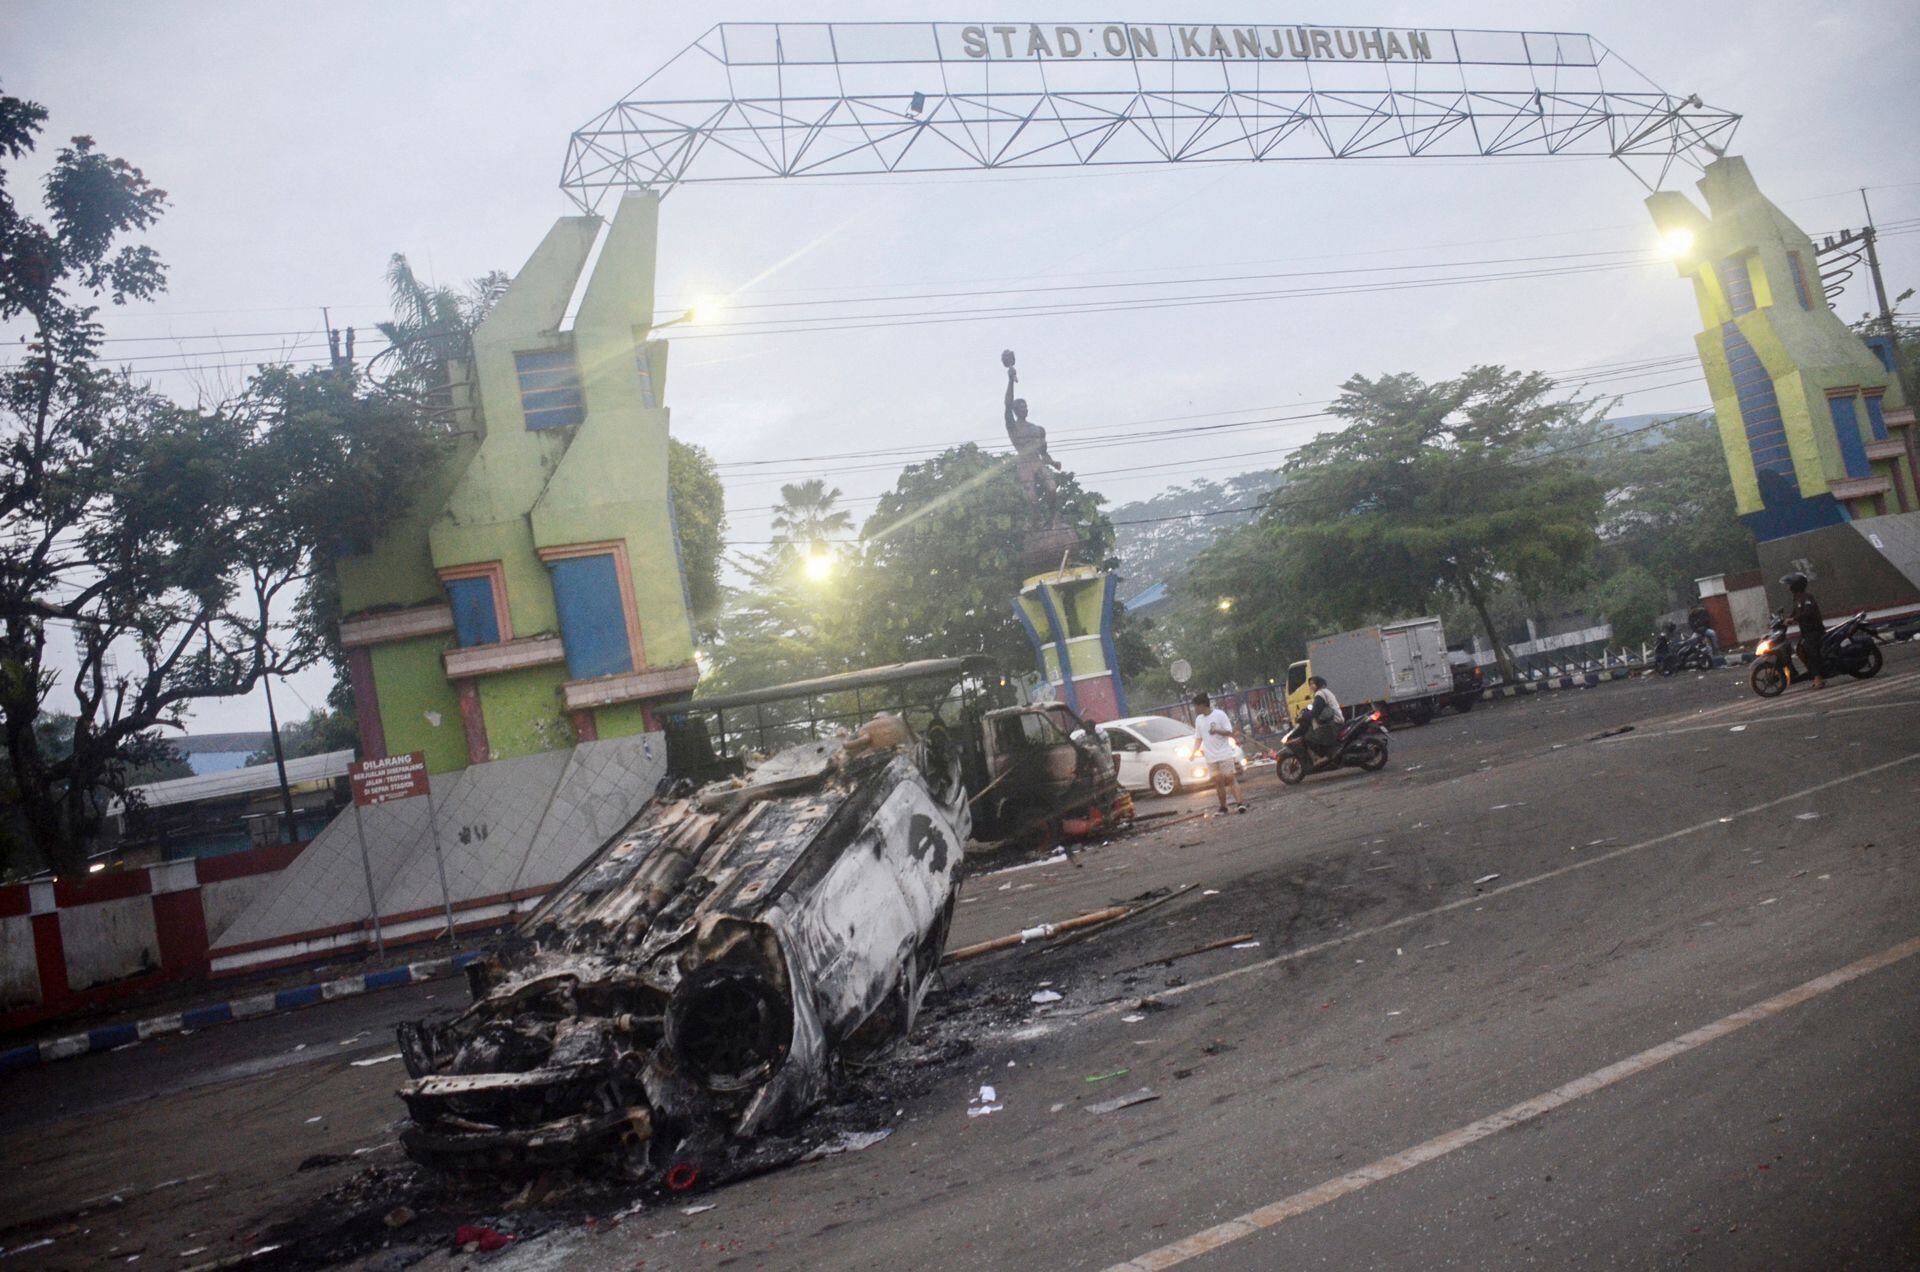 Esta imagen muestra un auto incendiado afuera del estadio Kanjuruhan en Malang, Java Oriental, el 2 de octubre de 2022. (Foto de PUTRI / AFP)